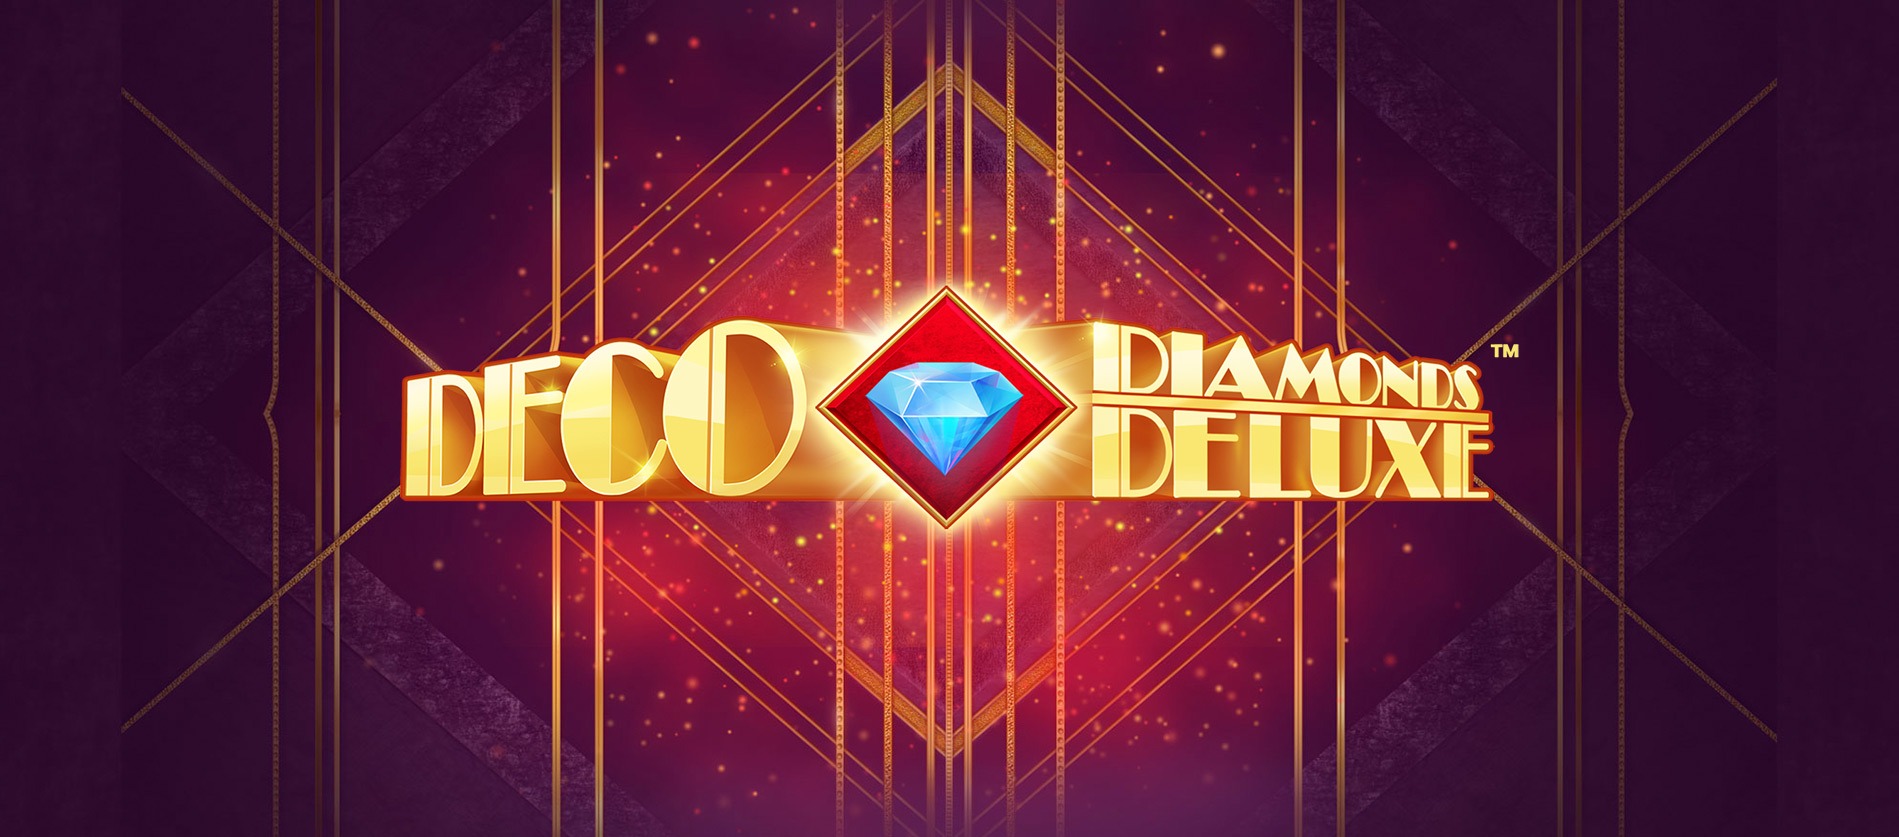 Deco Diamonds Deluxe Slots Umbingo